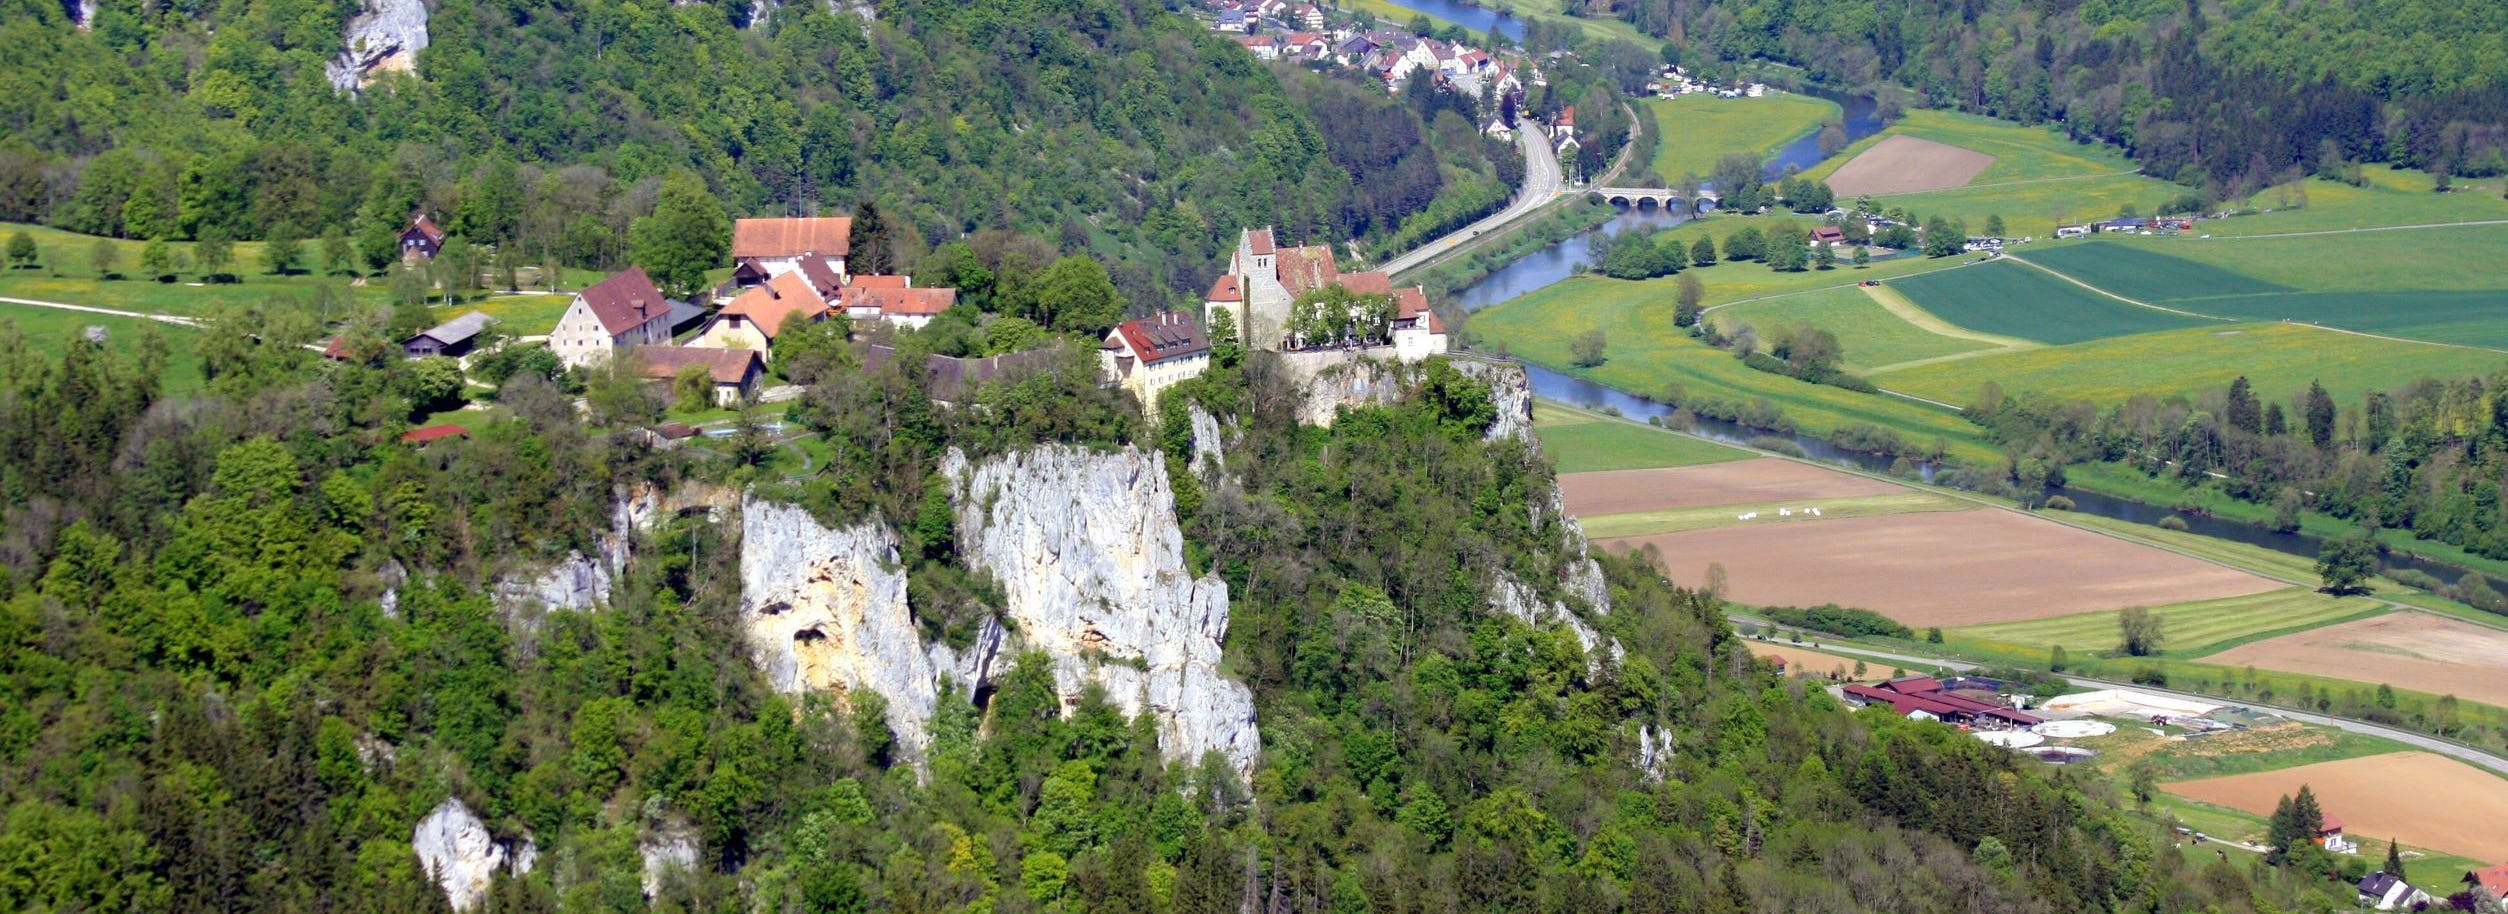 Schwäbische Alb Donautal